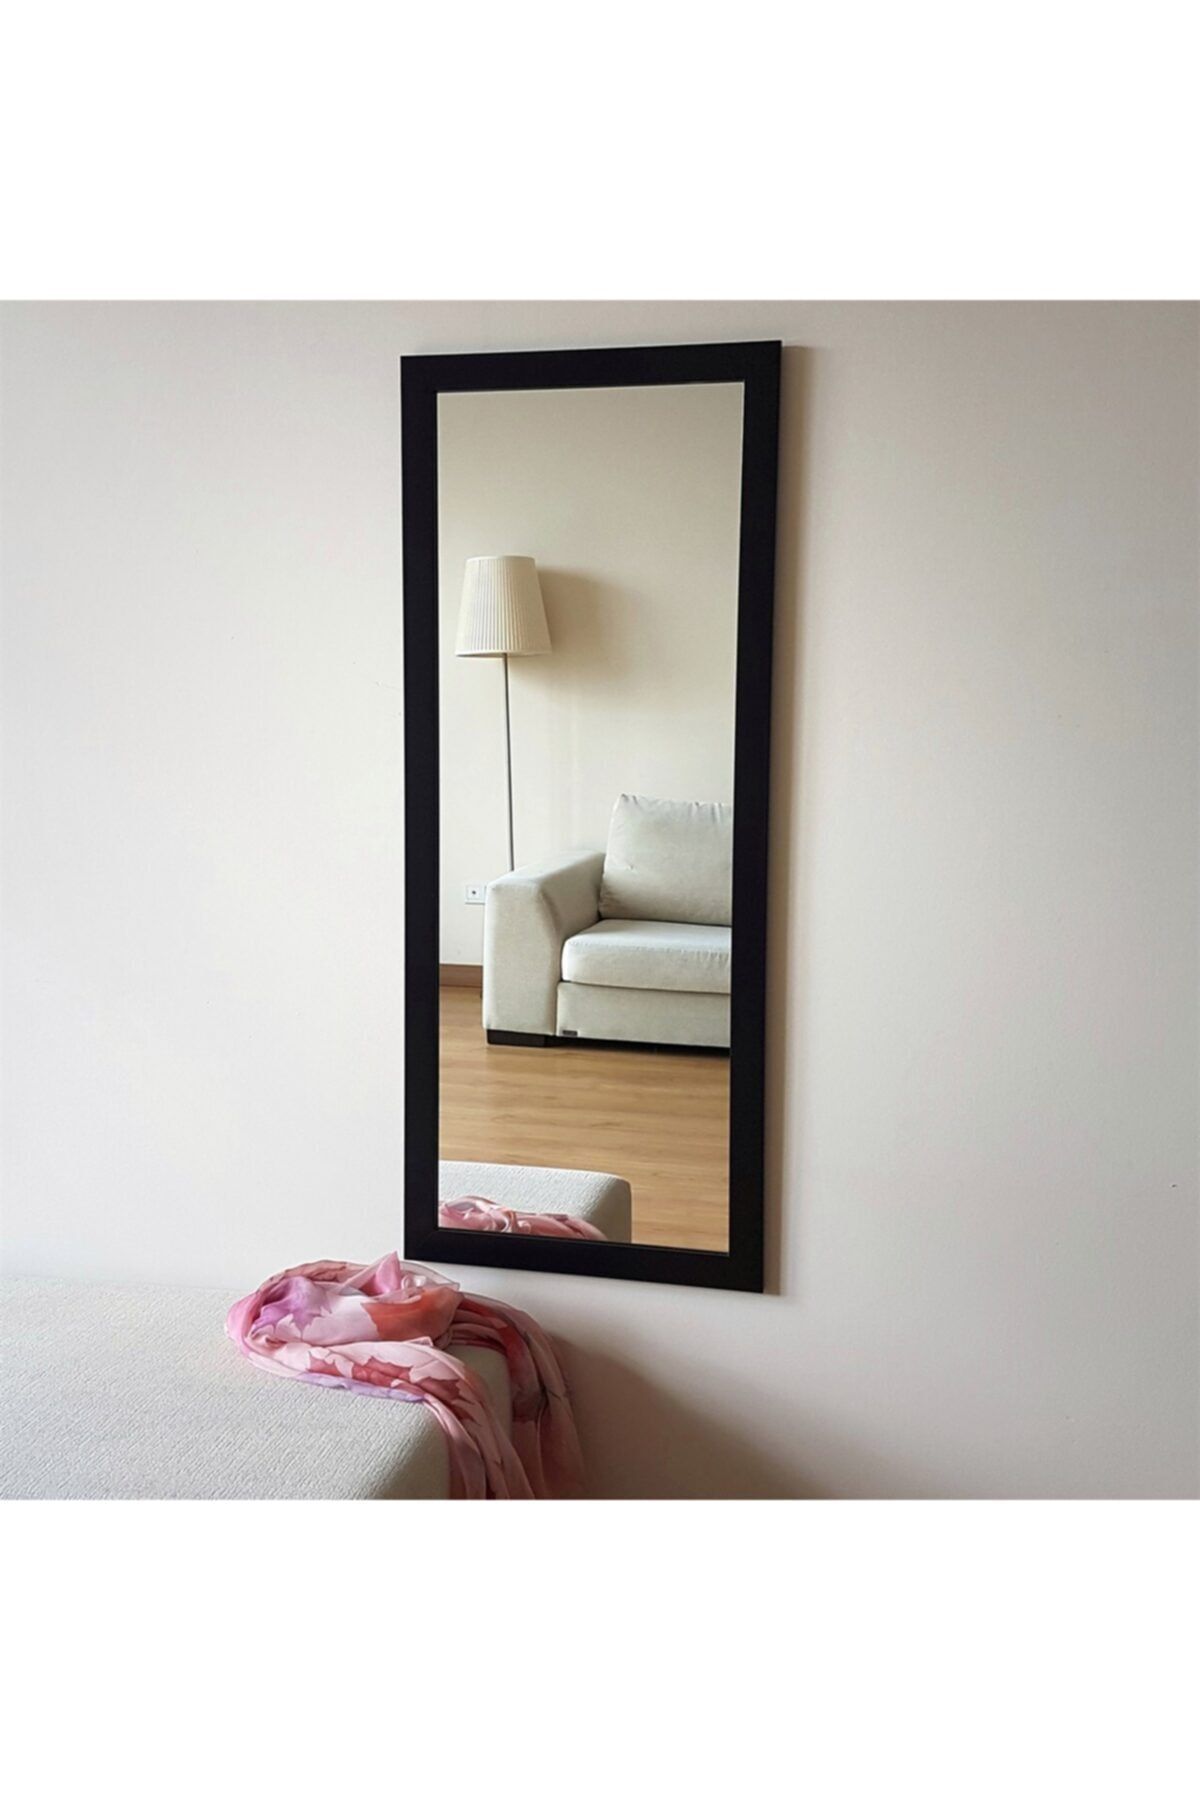 NEOstill Siyah Dekoratif Ayna 45x110 cm A205